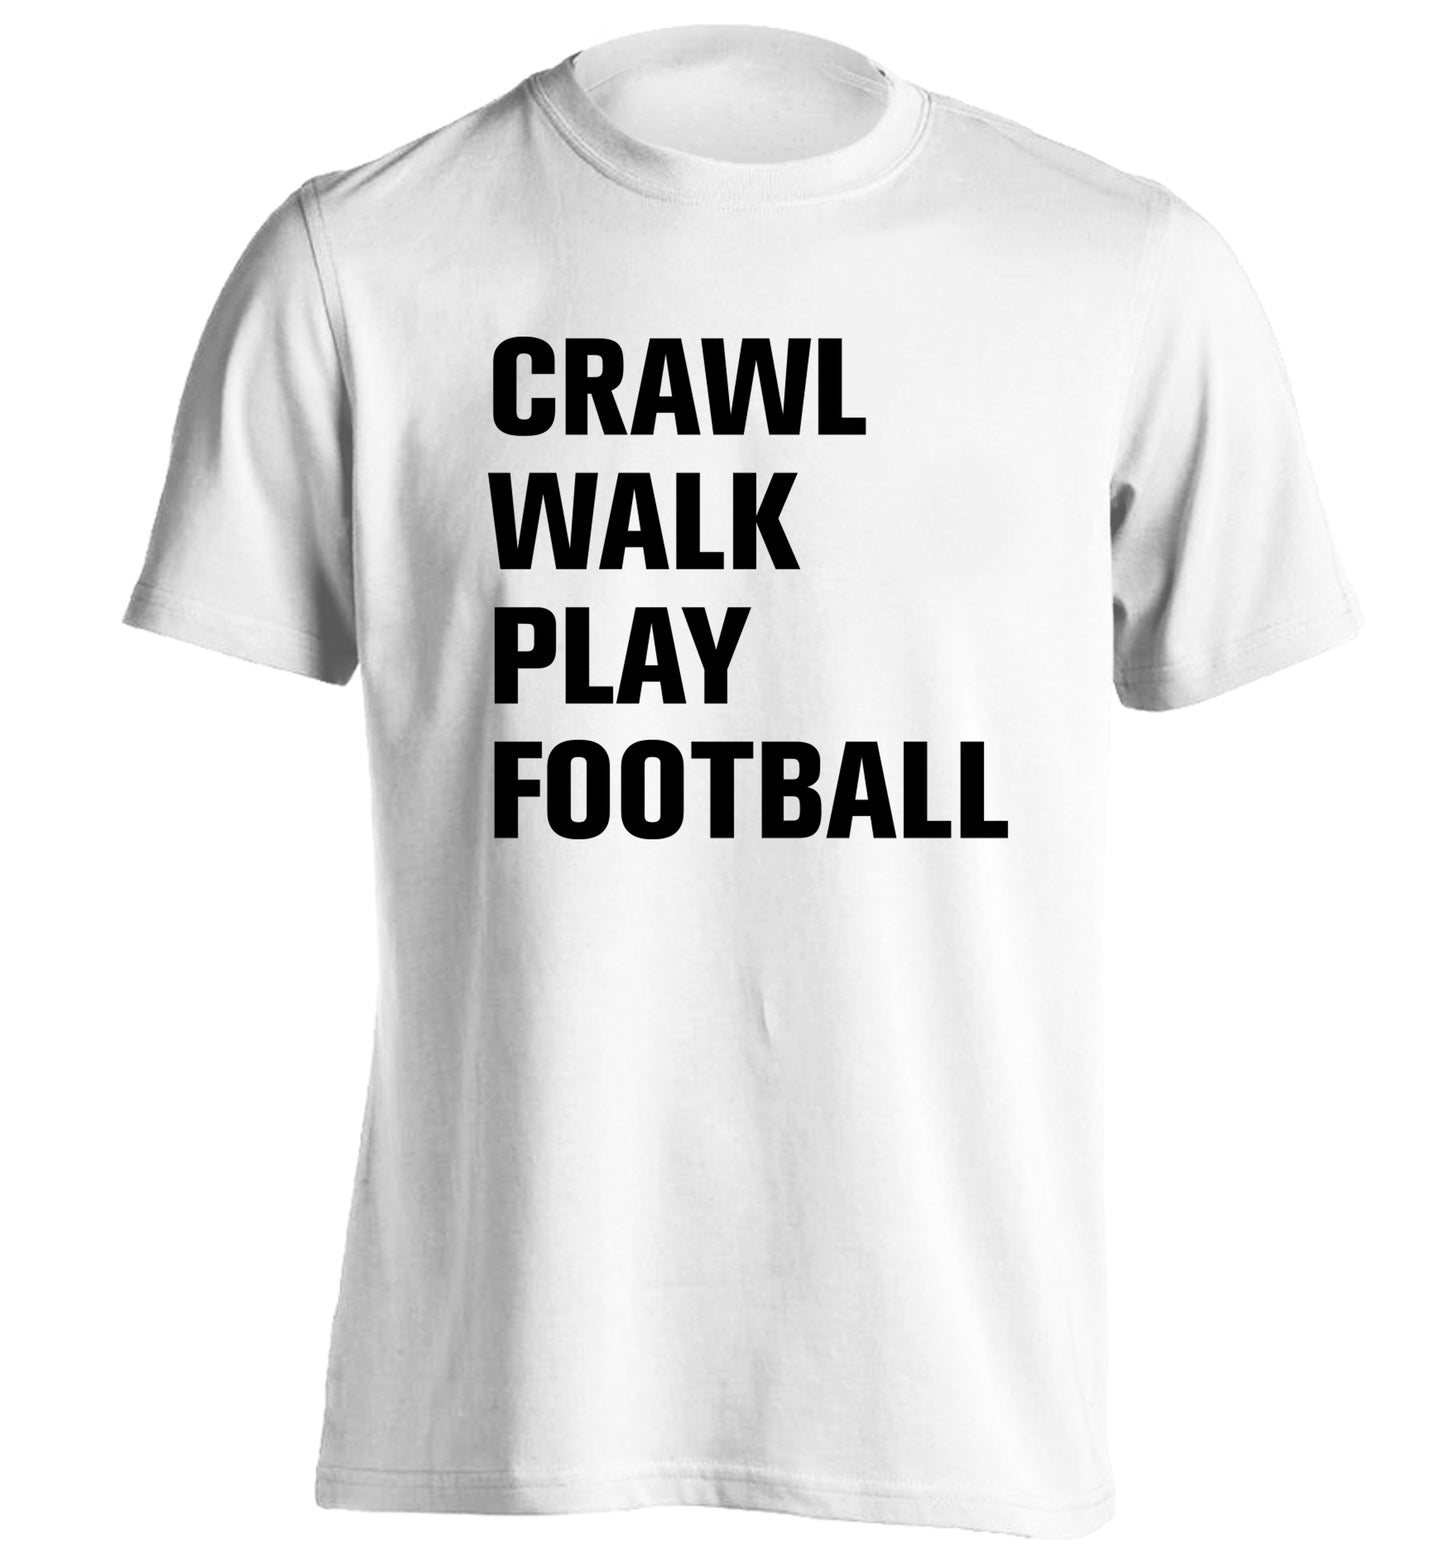 Crawl, walk, play football adults unisex white Tshirt 2XL